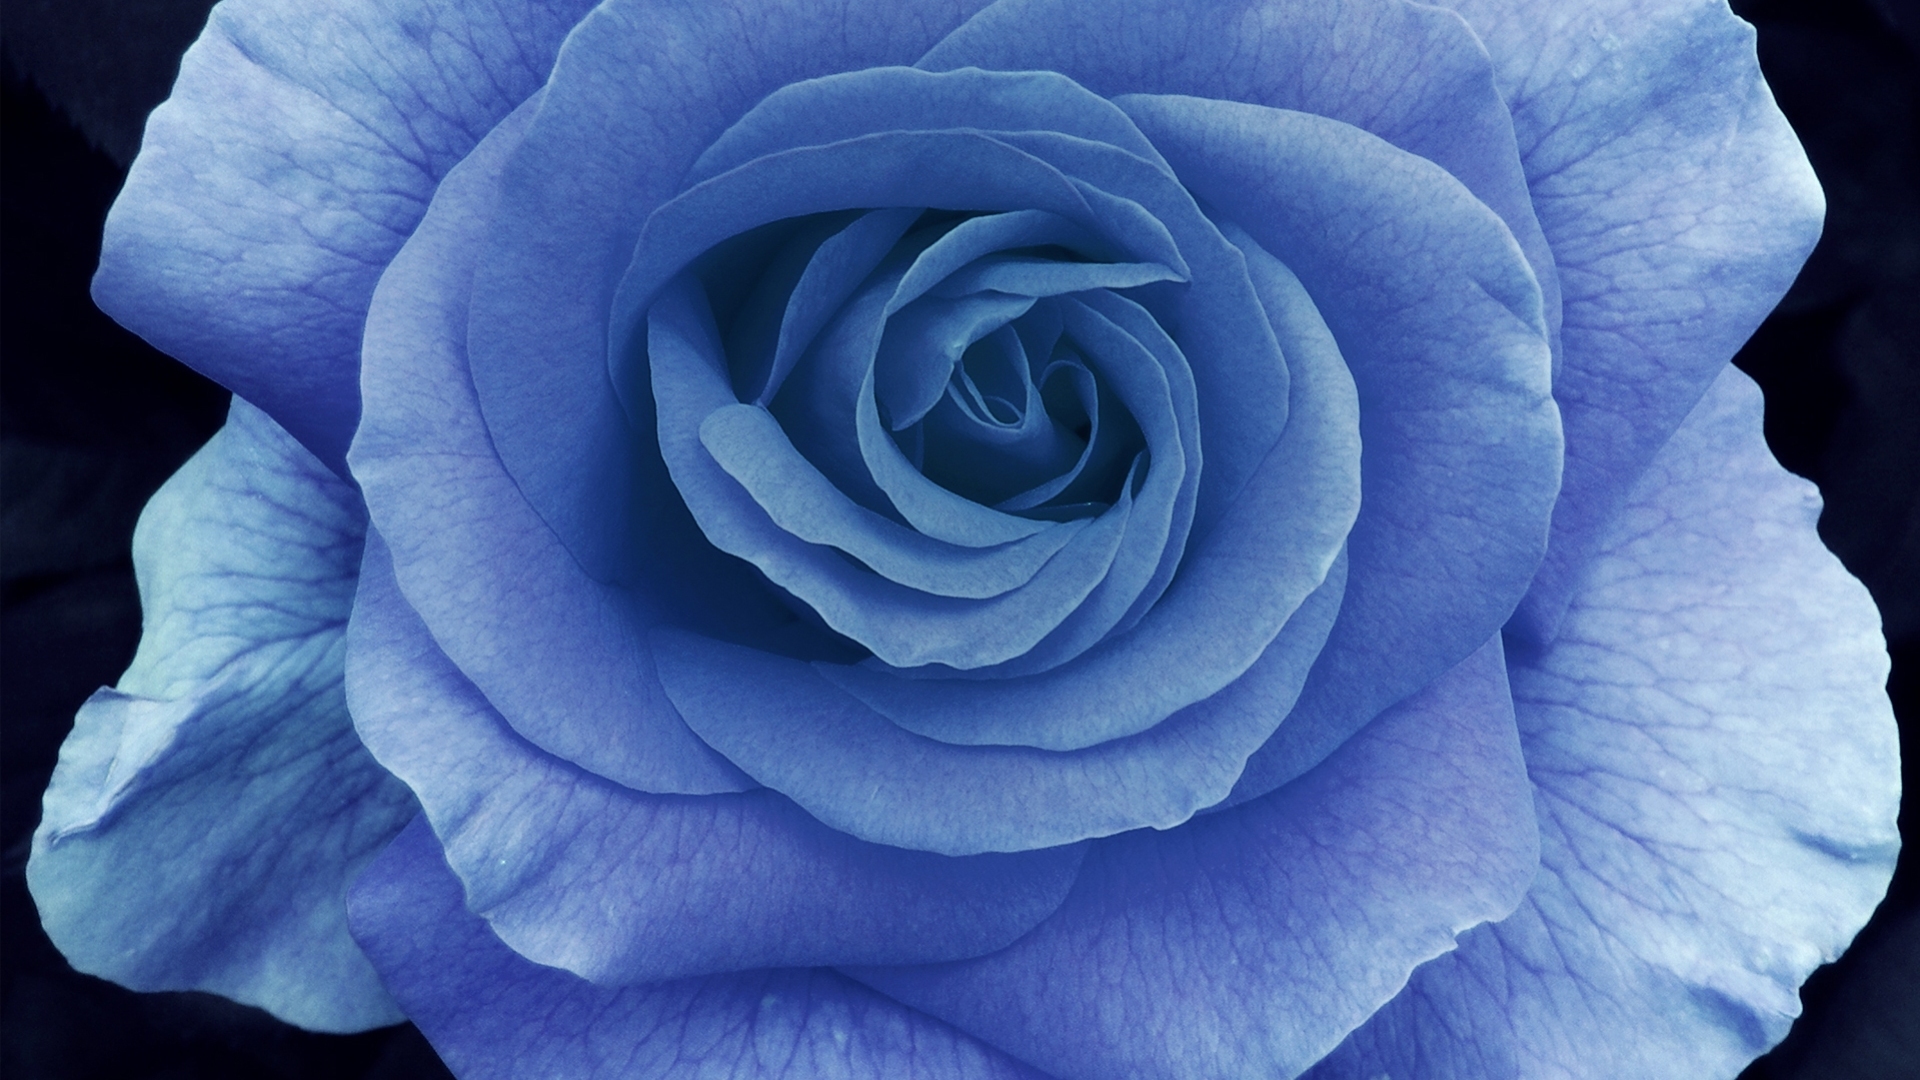 [47+] Dark Blue Roses Wallpaper | WallpaperSafari.com